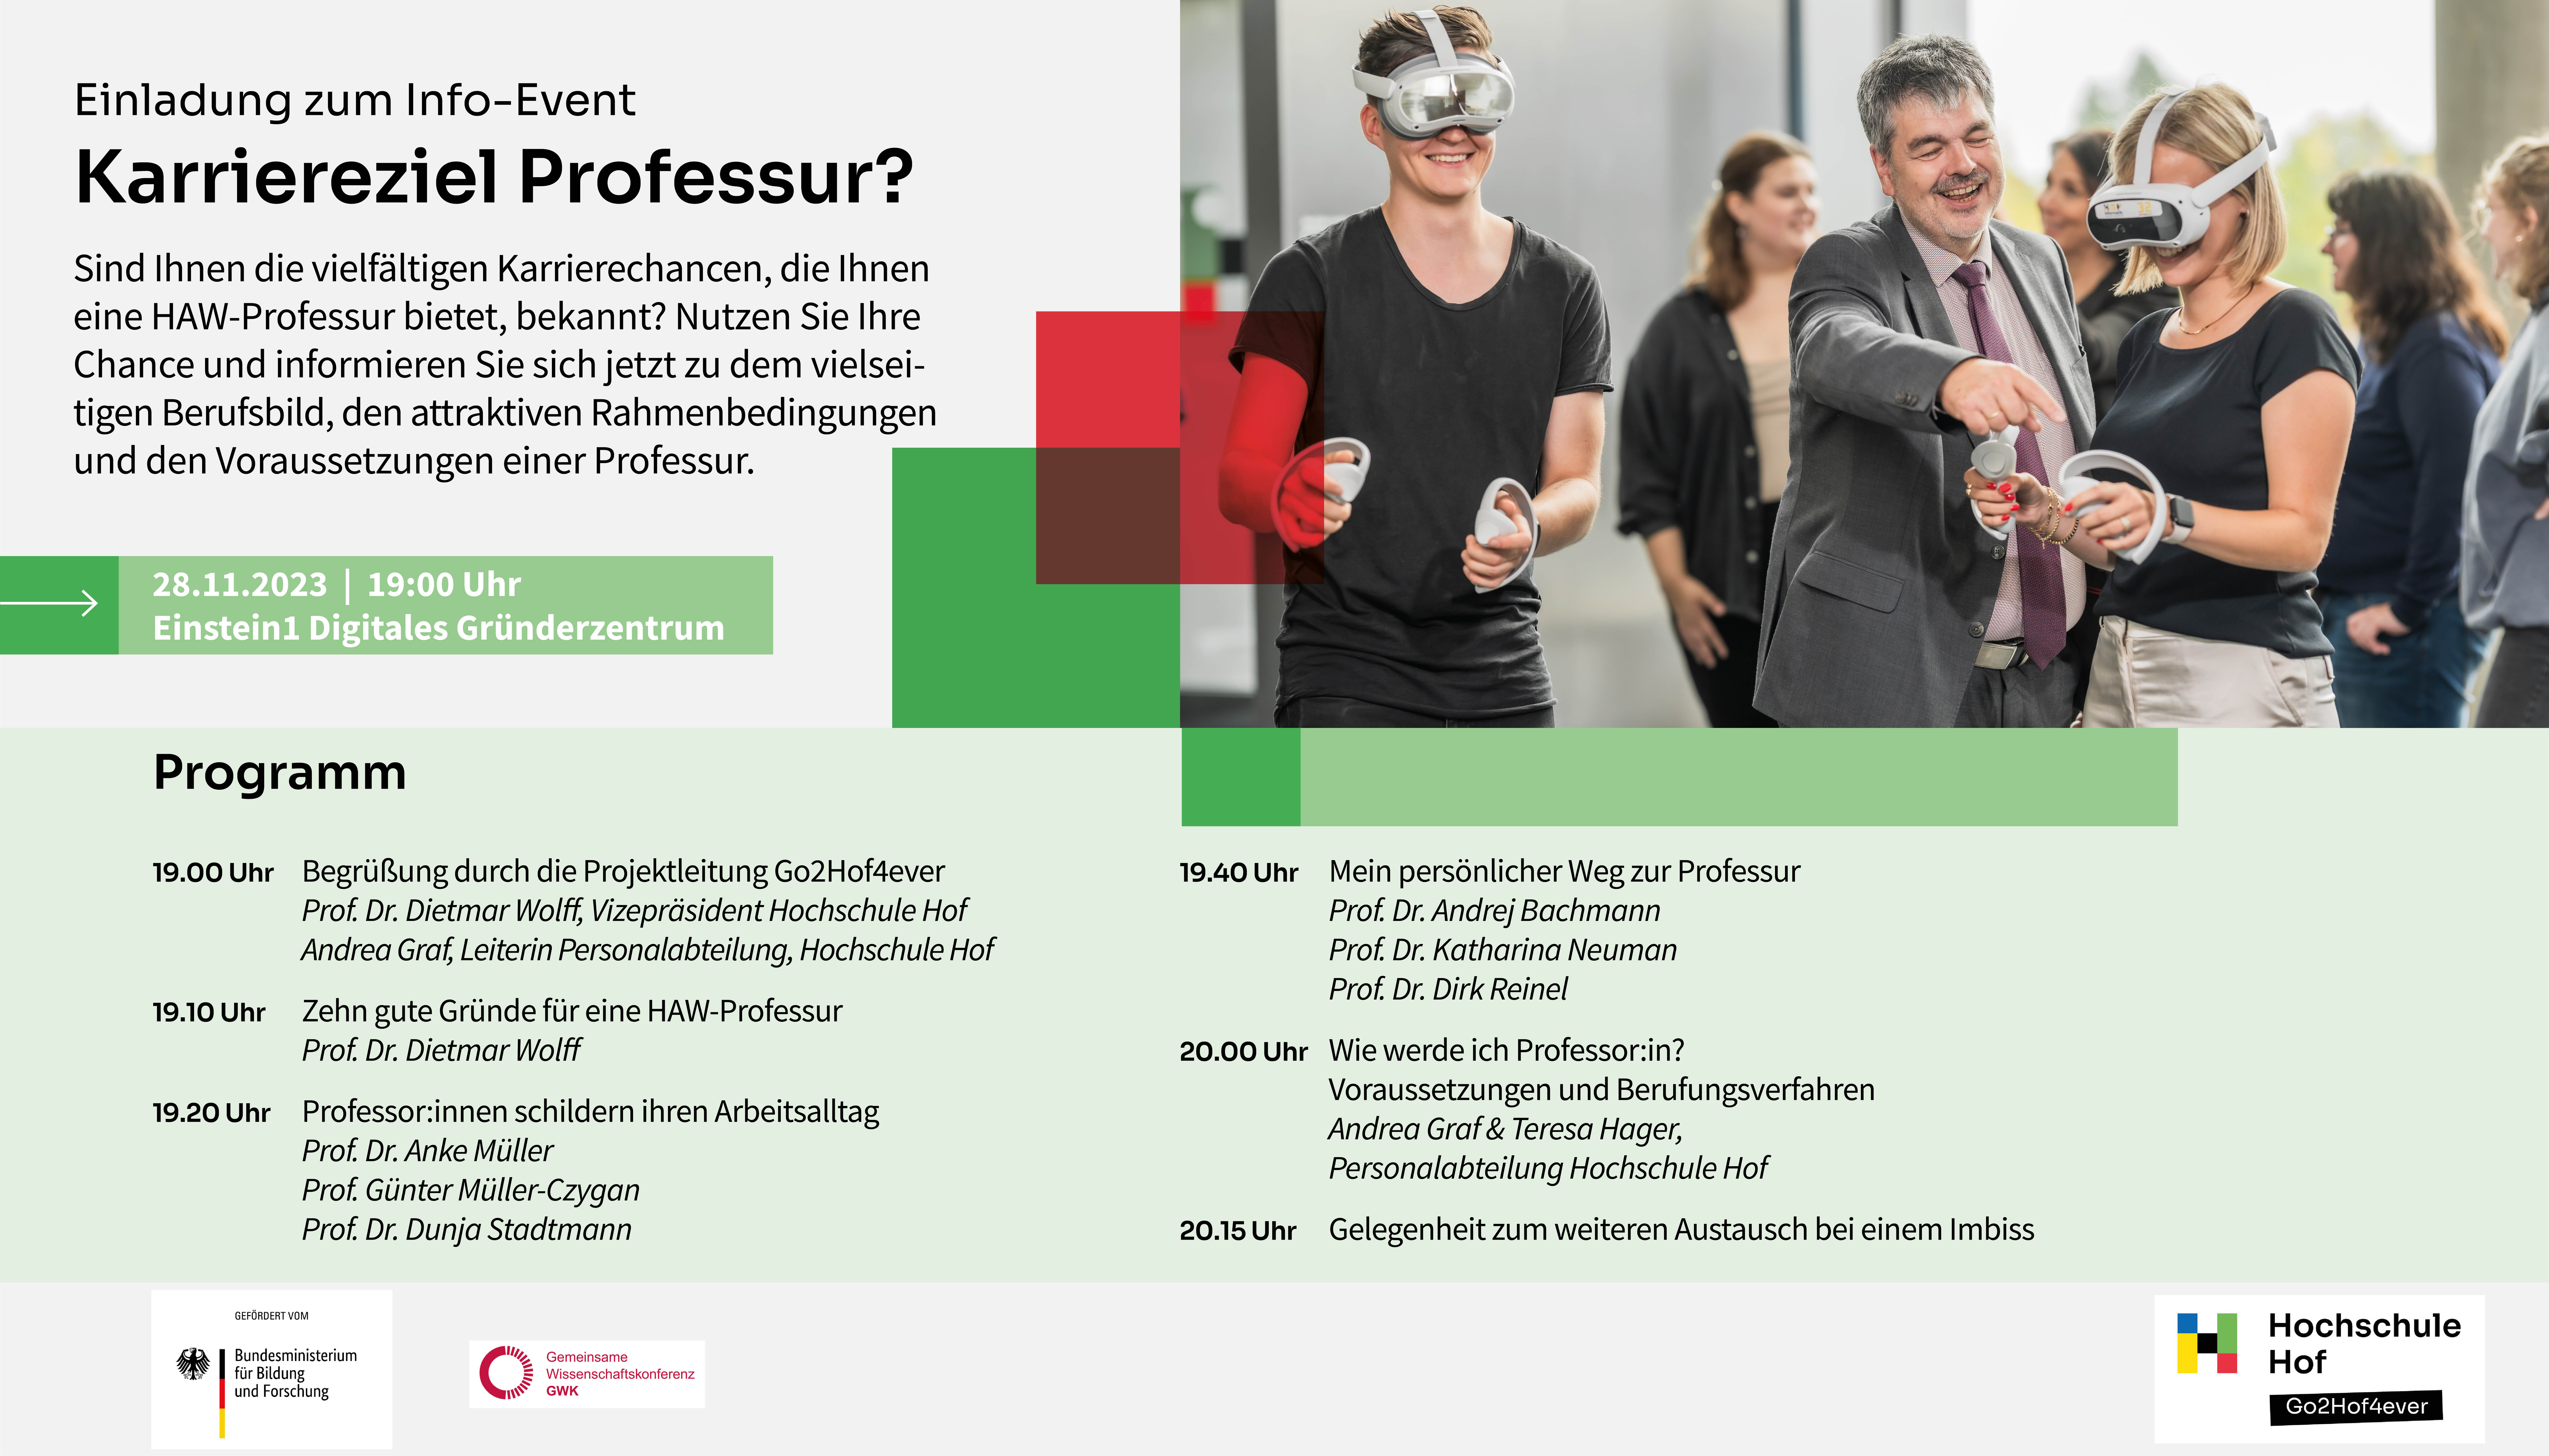 Info-Event "Karriereziel Professur?": Einladung mit Programm